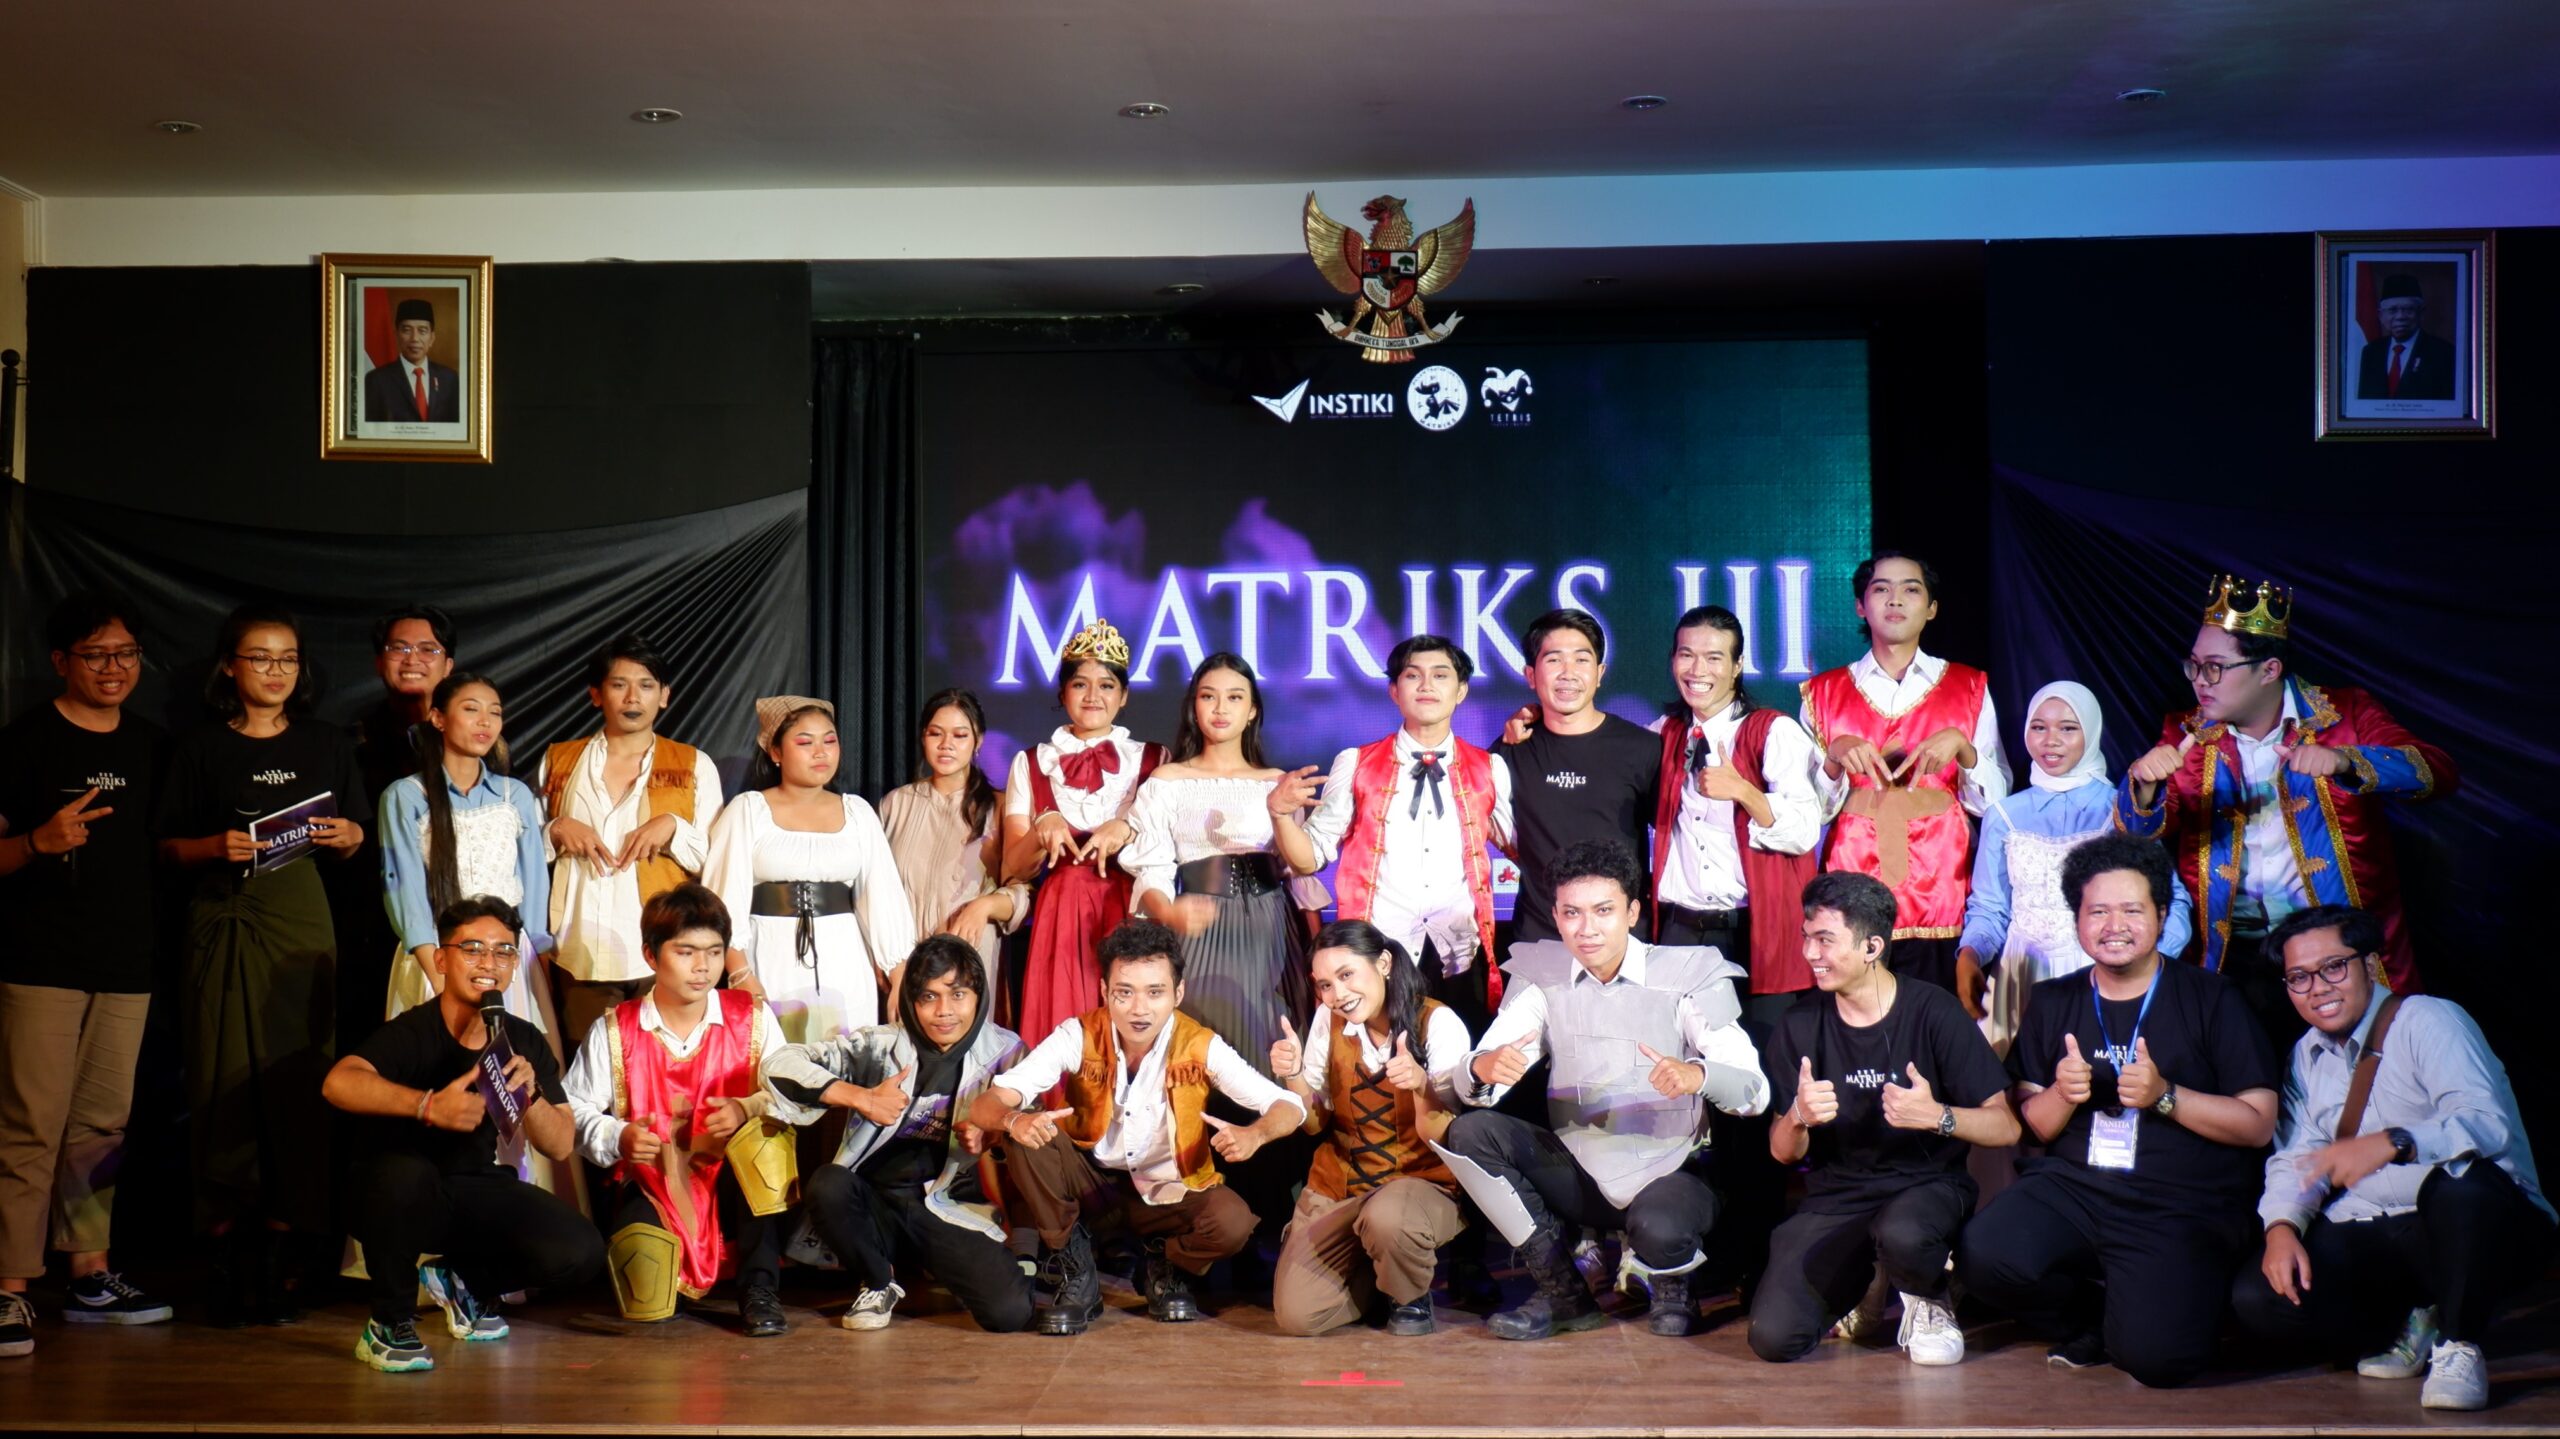 MATRIKS III, Malam Teater INSTIKI Tampilkan Special Performance dari Komunitas Teater di Denpasar!